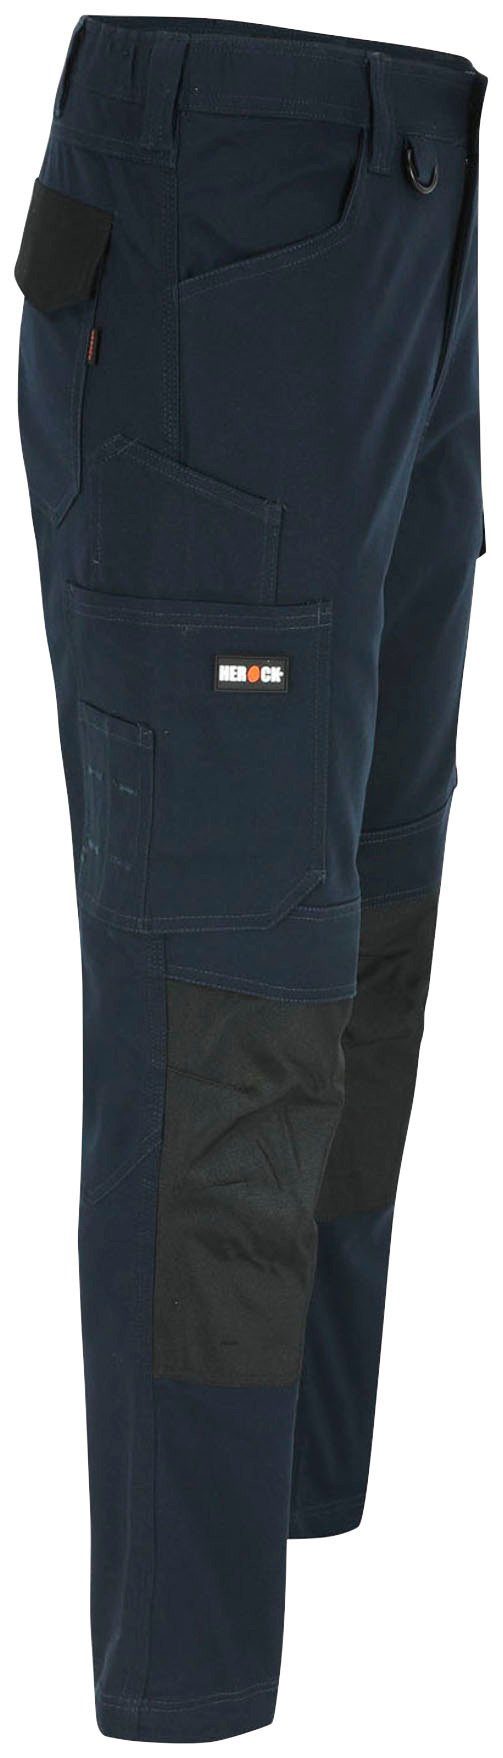 DERO Multi-Pocket, Arbeitshose 2-Wege-Stretch, Passform, Slim Fit marine Herock wasserabweisend